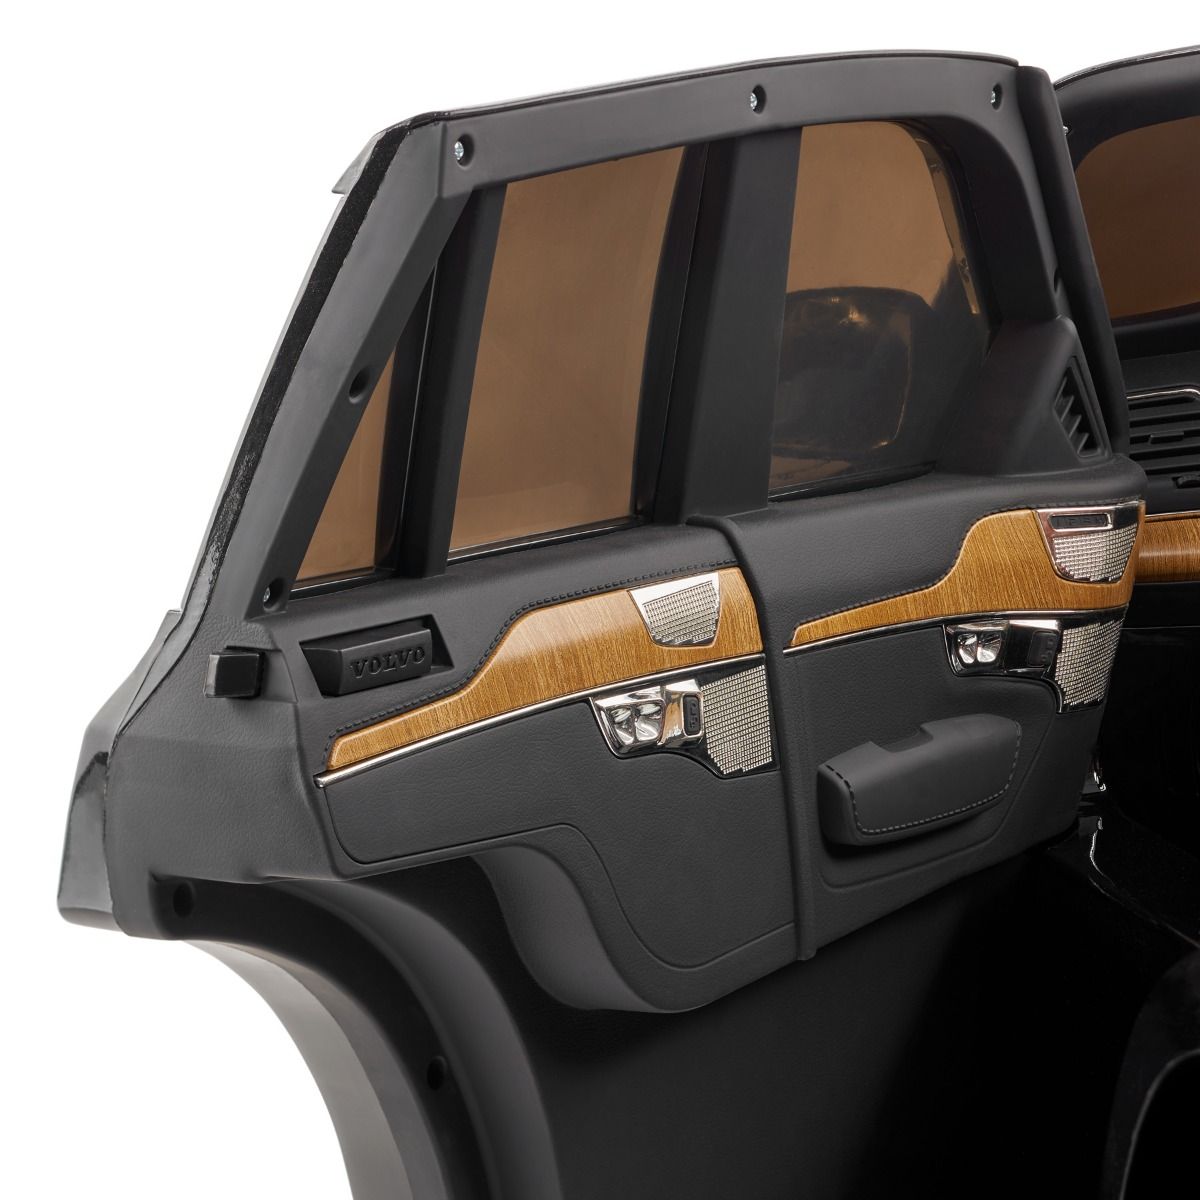 Elektro-Aufsitz-Volvo XC90, schwarz, doppelter Ledersitz, MP3-Player mit  Bluetooth- und USB-Eingang, zu öffnende Türen und Motorhaube,  12-V-10-Ah-Batterie, EVA-Räder, gefederte Achsen, 2,4-GHz-Fernbedienung,  Lizenziert